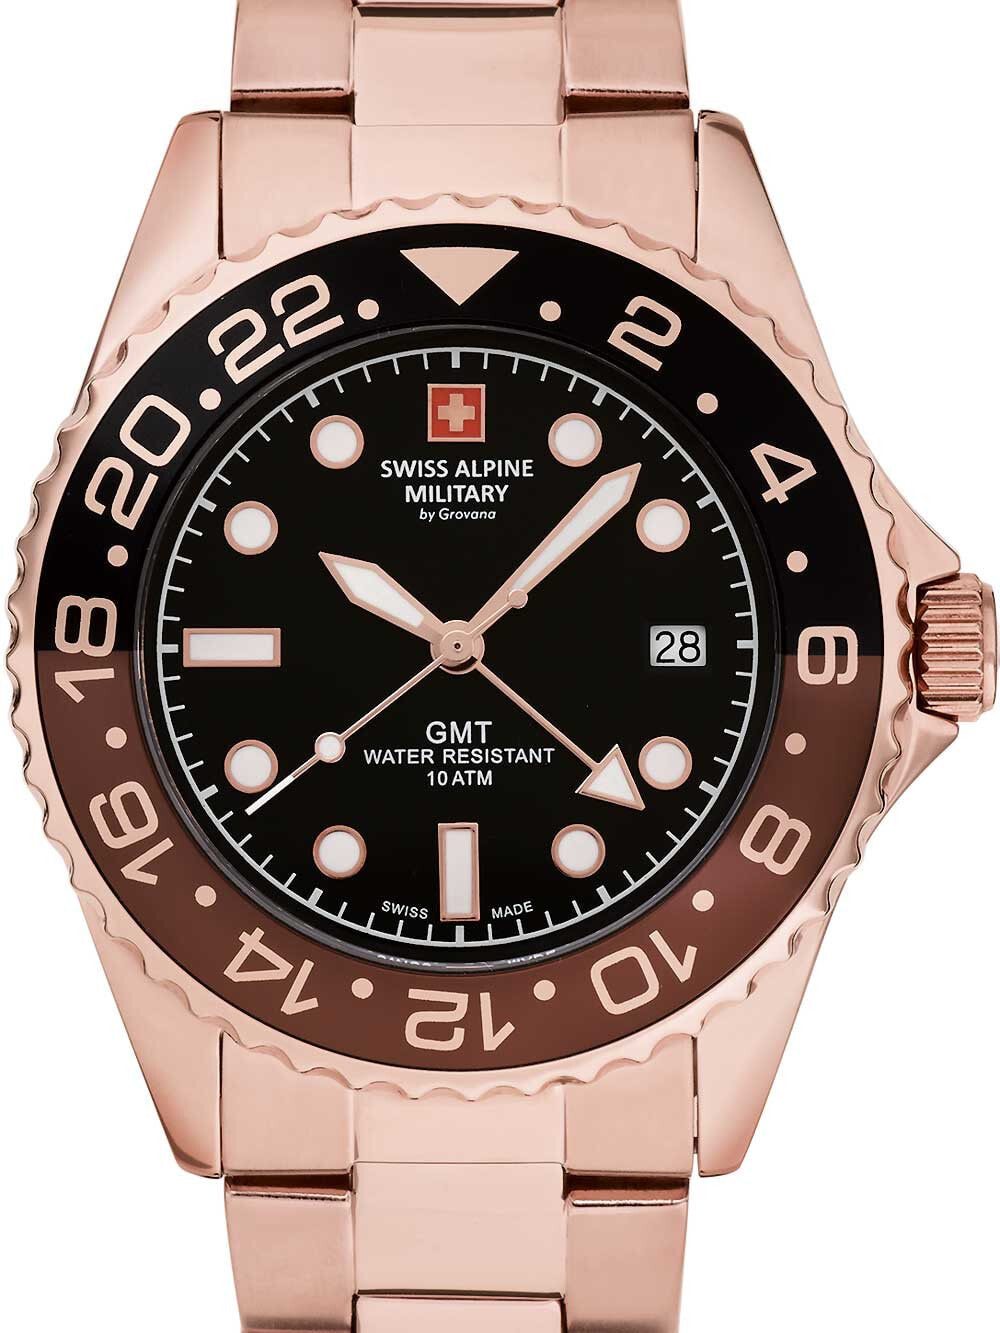 Мужские наручные часы с золотистым браслетом Swiss Alpine Military 7052.1164 GMT diver 42mm 10ATM